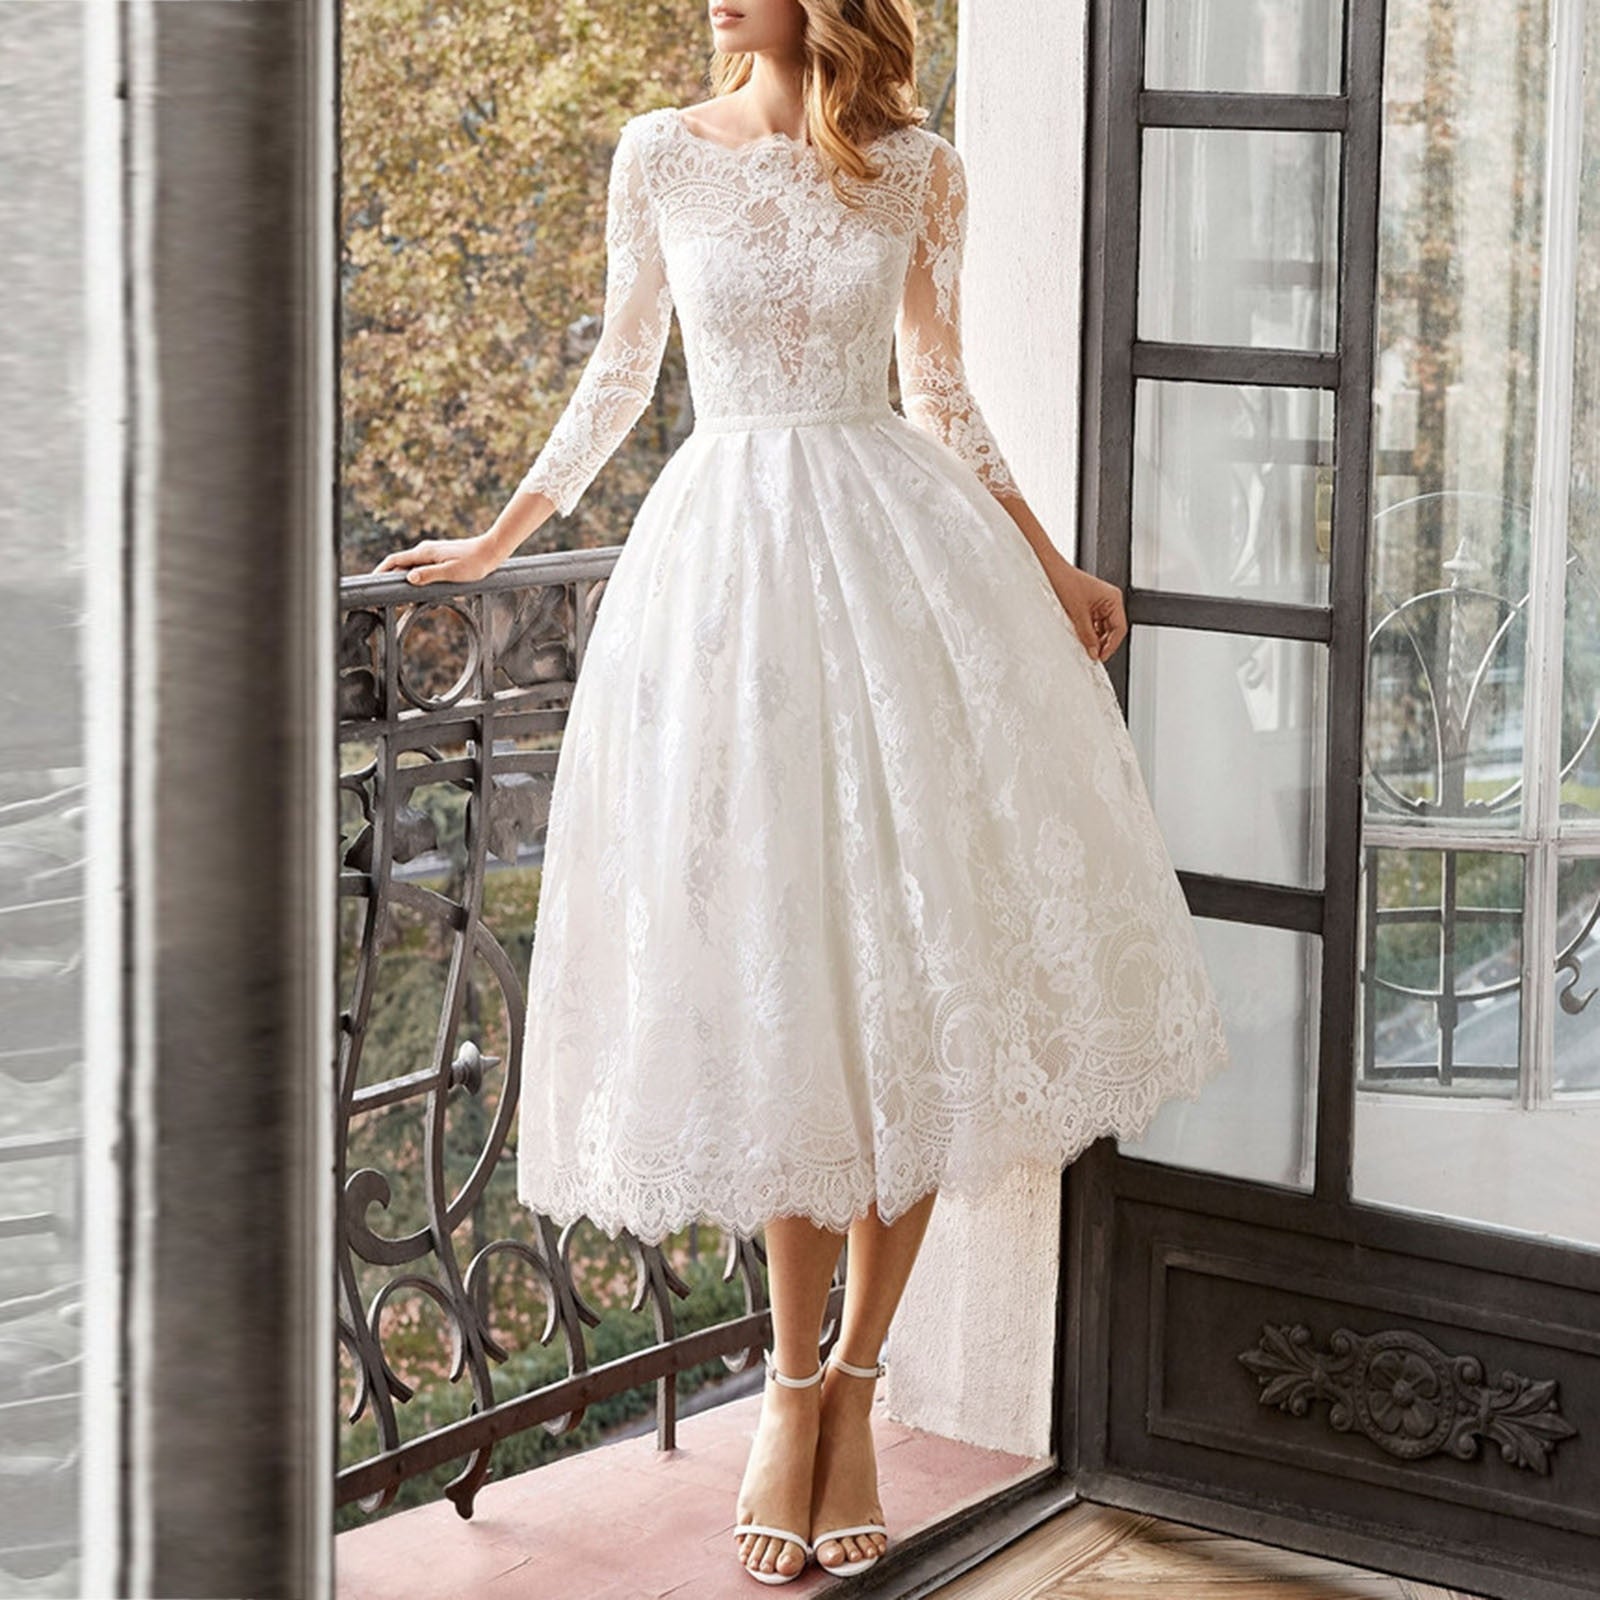 HOOR Elegant White Lace Dress White